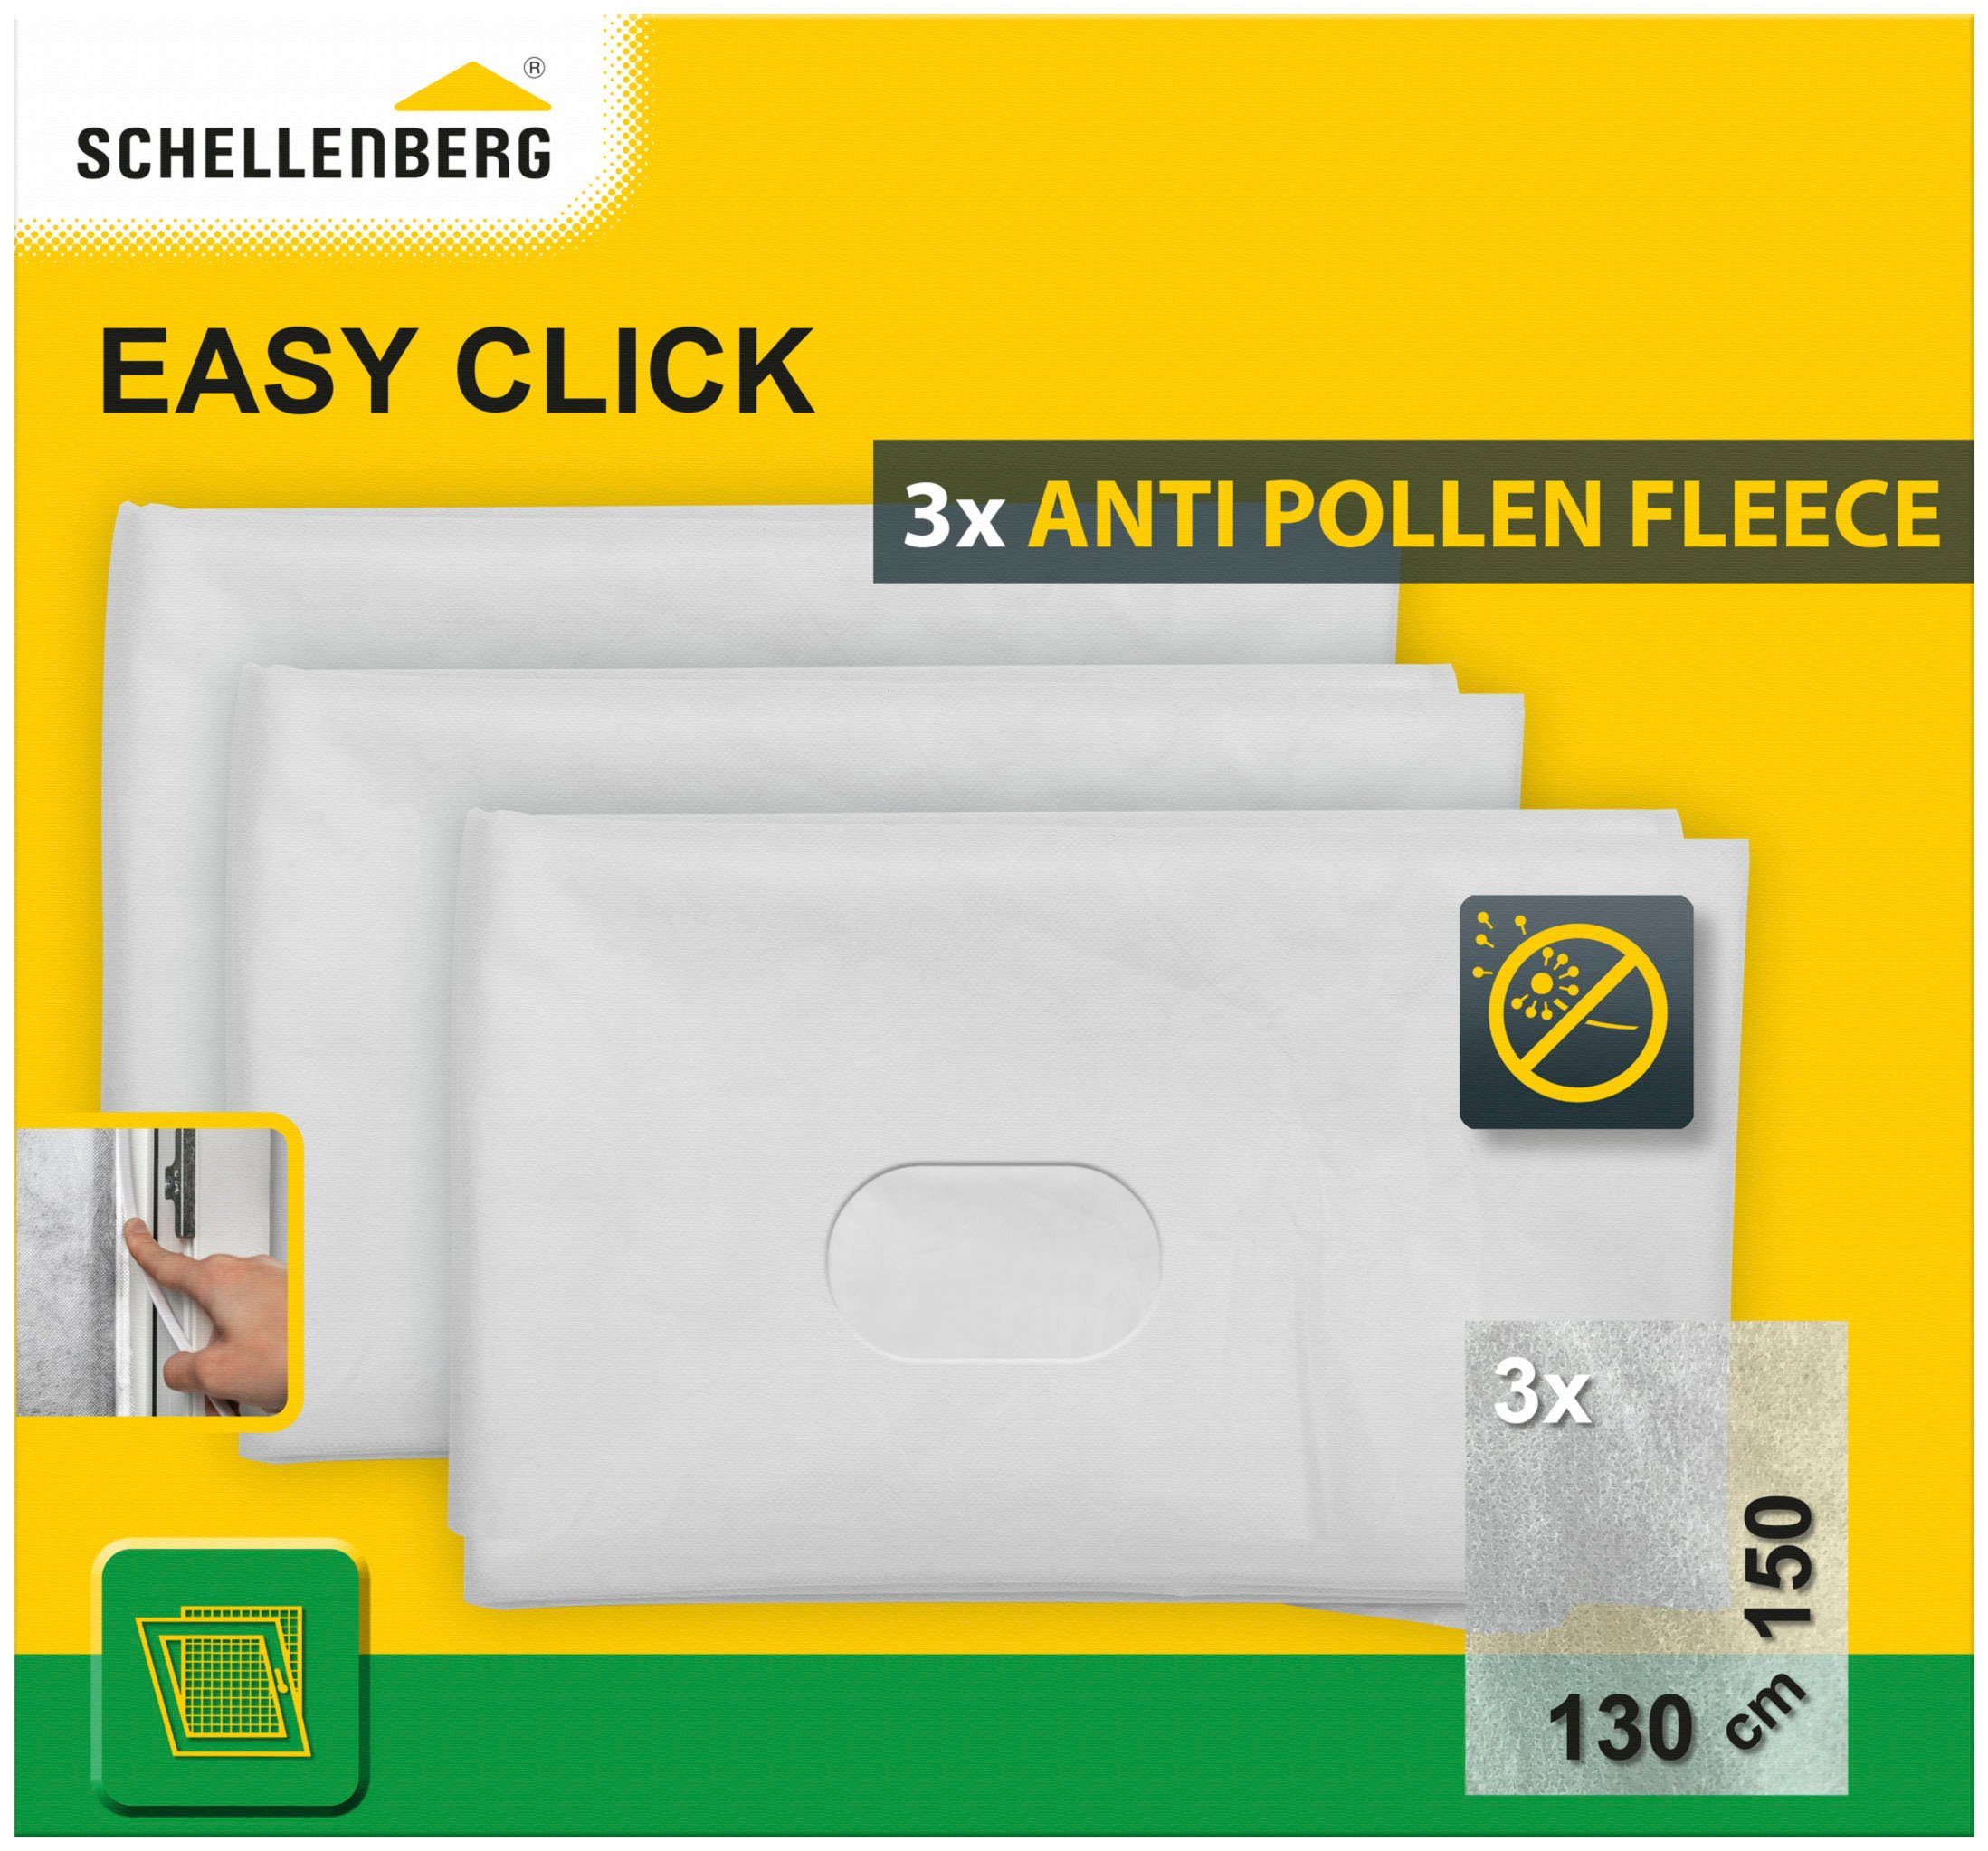 SCHELLENBERG Fliegengitter-Gewebe Pollenschutz für Fenster Easy Click, (Packung, 1-St), Pollenschutzvlies Austauschset im 3er-Pack, 130 x 150 cm, weiß, 70473